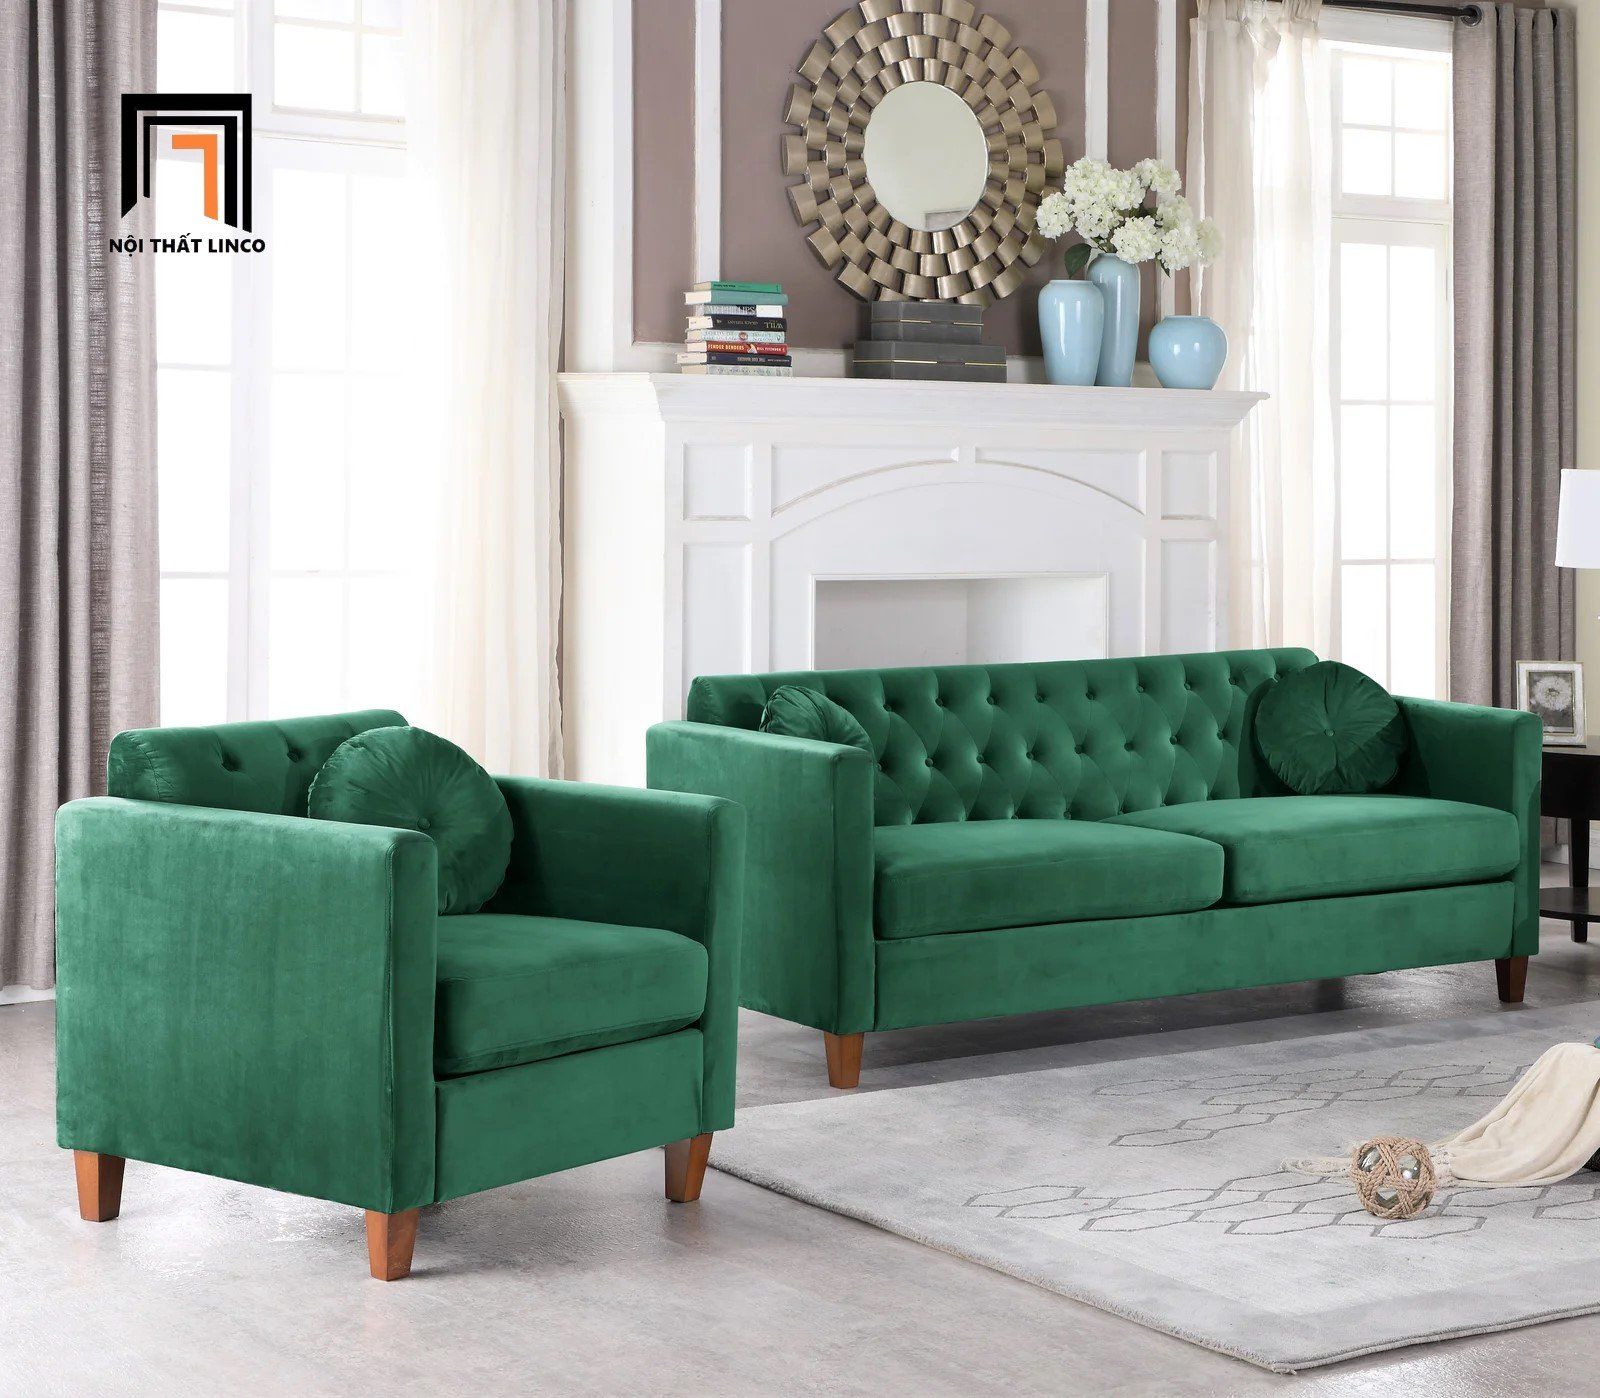  Bộ ghế sofa gia đình hiện đại KT125 Prady xanh lá vải nhung 